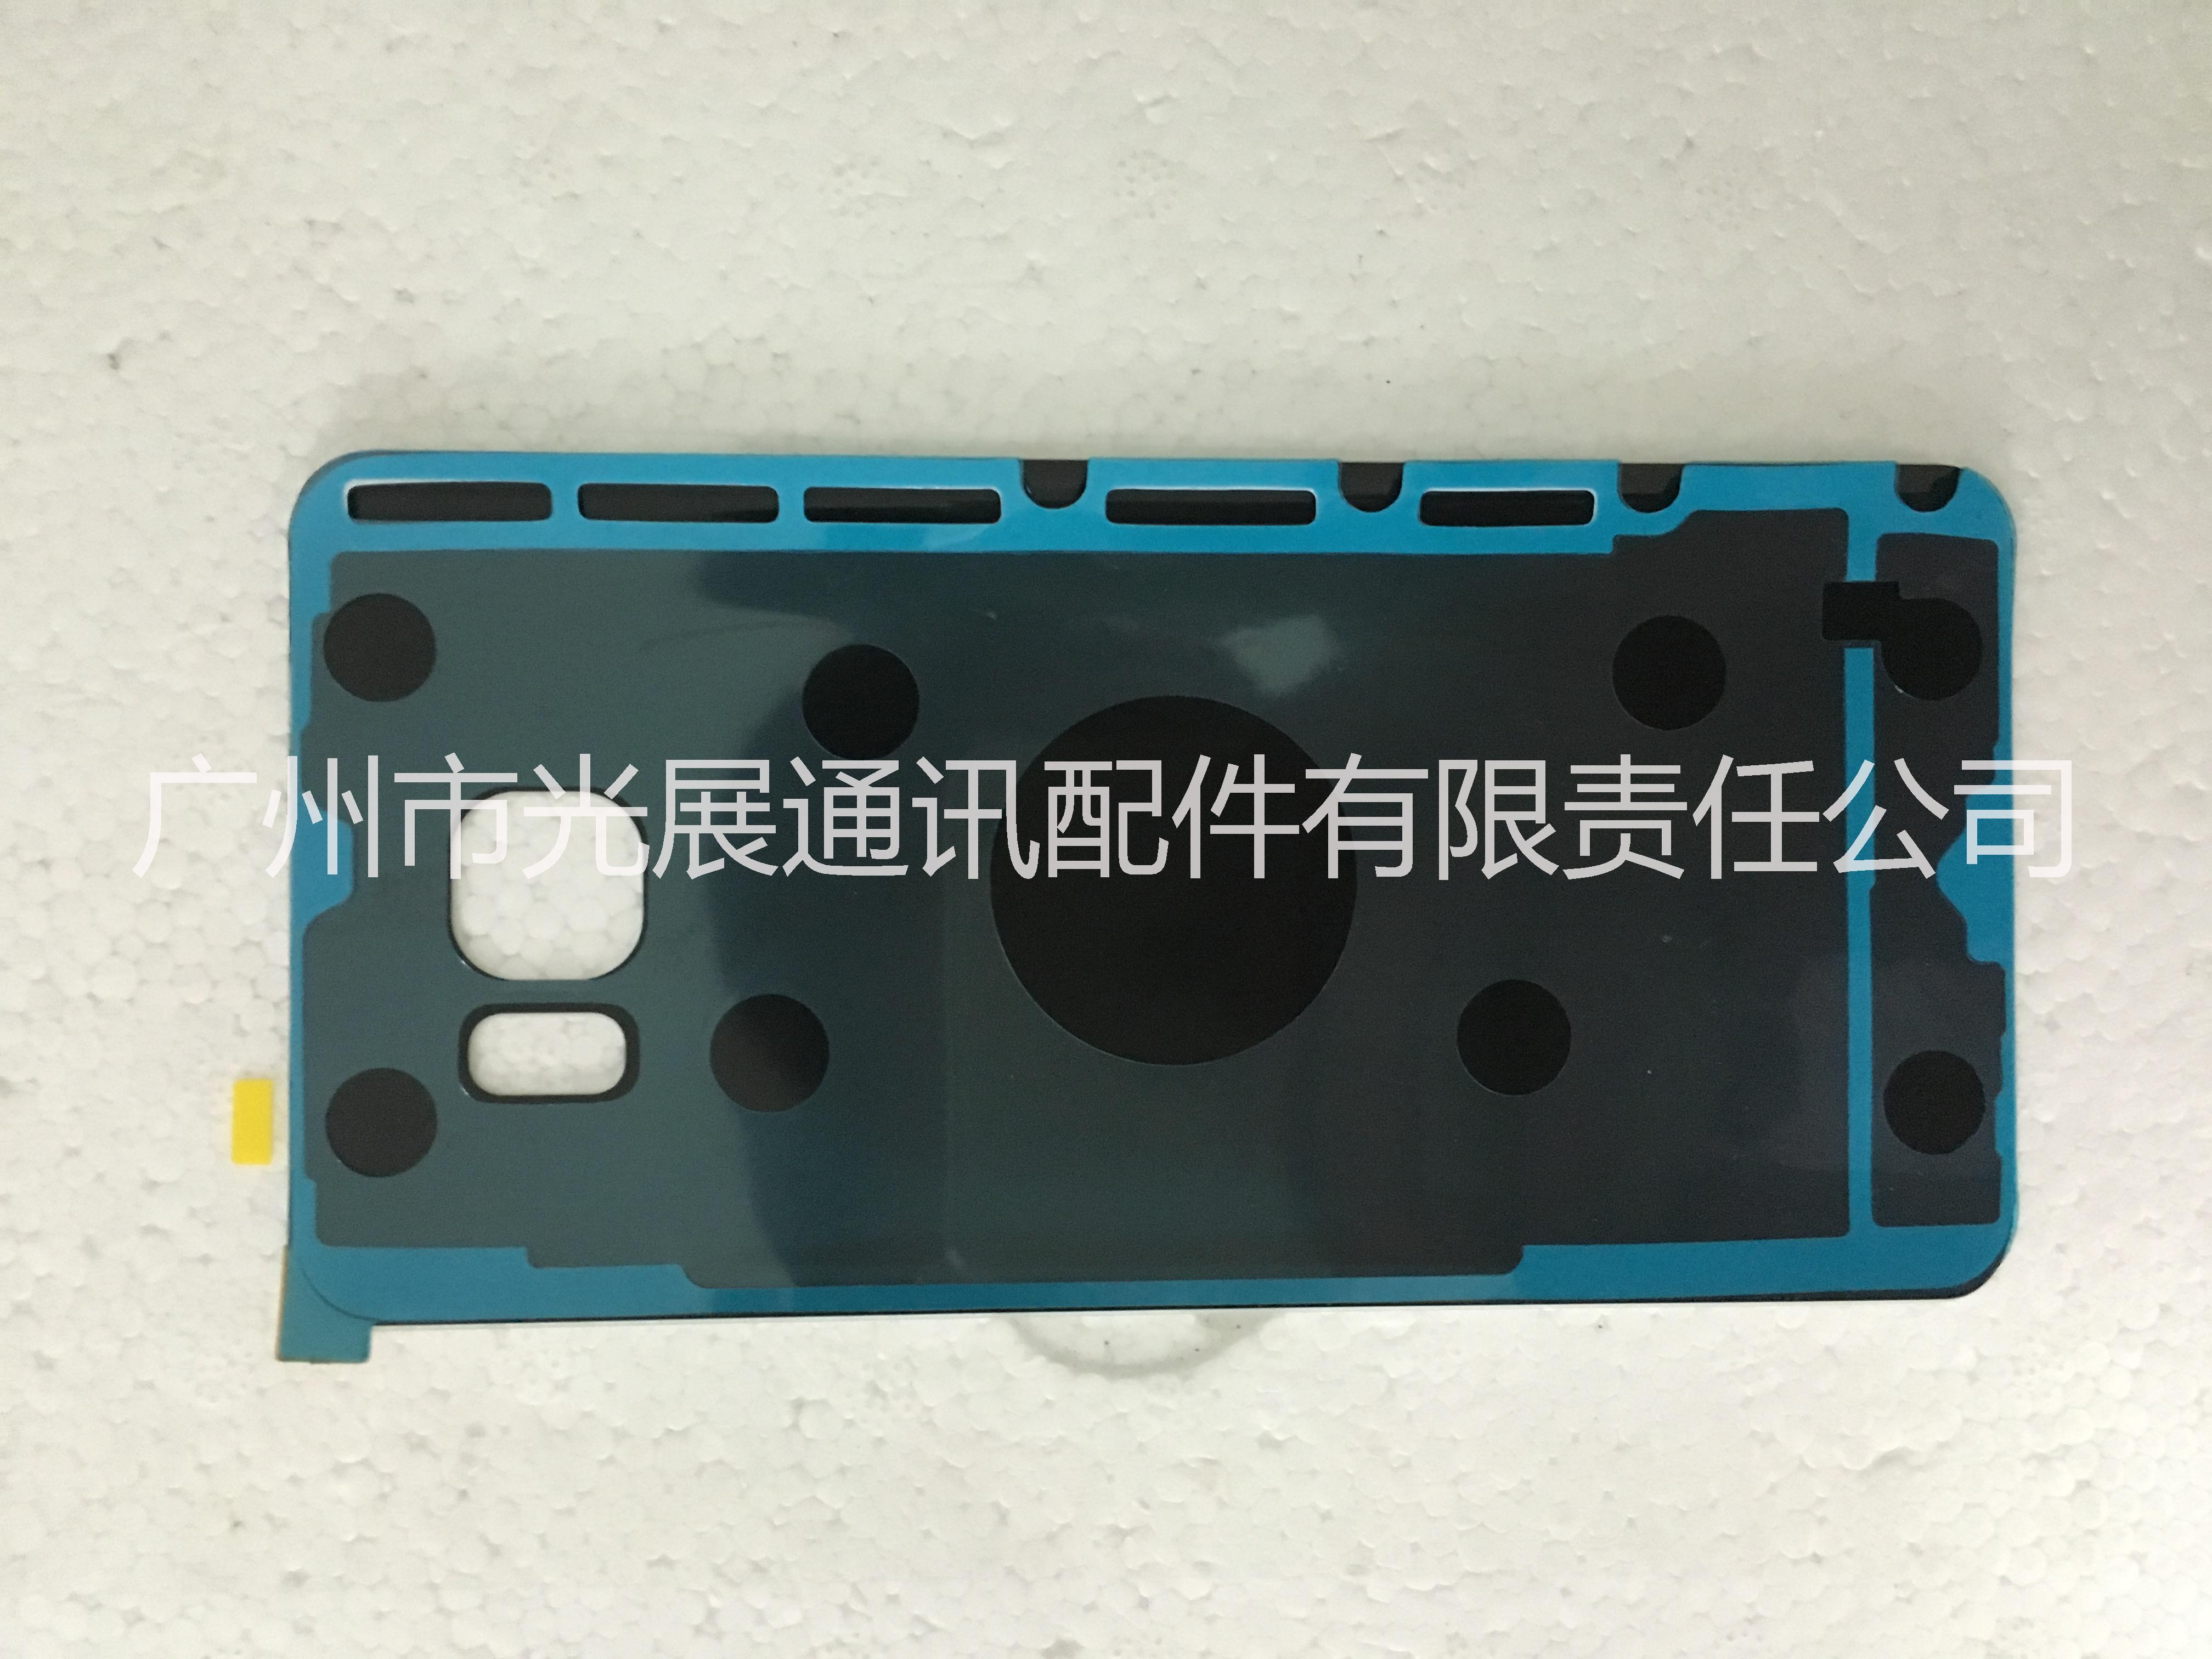 厂家直销批发零售 三星手机电池盖Note5原装后盖 价格优惠